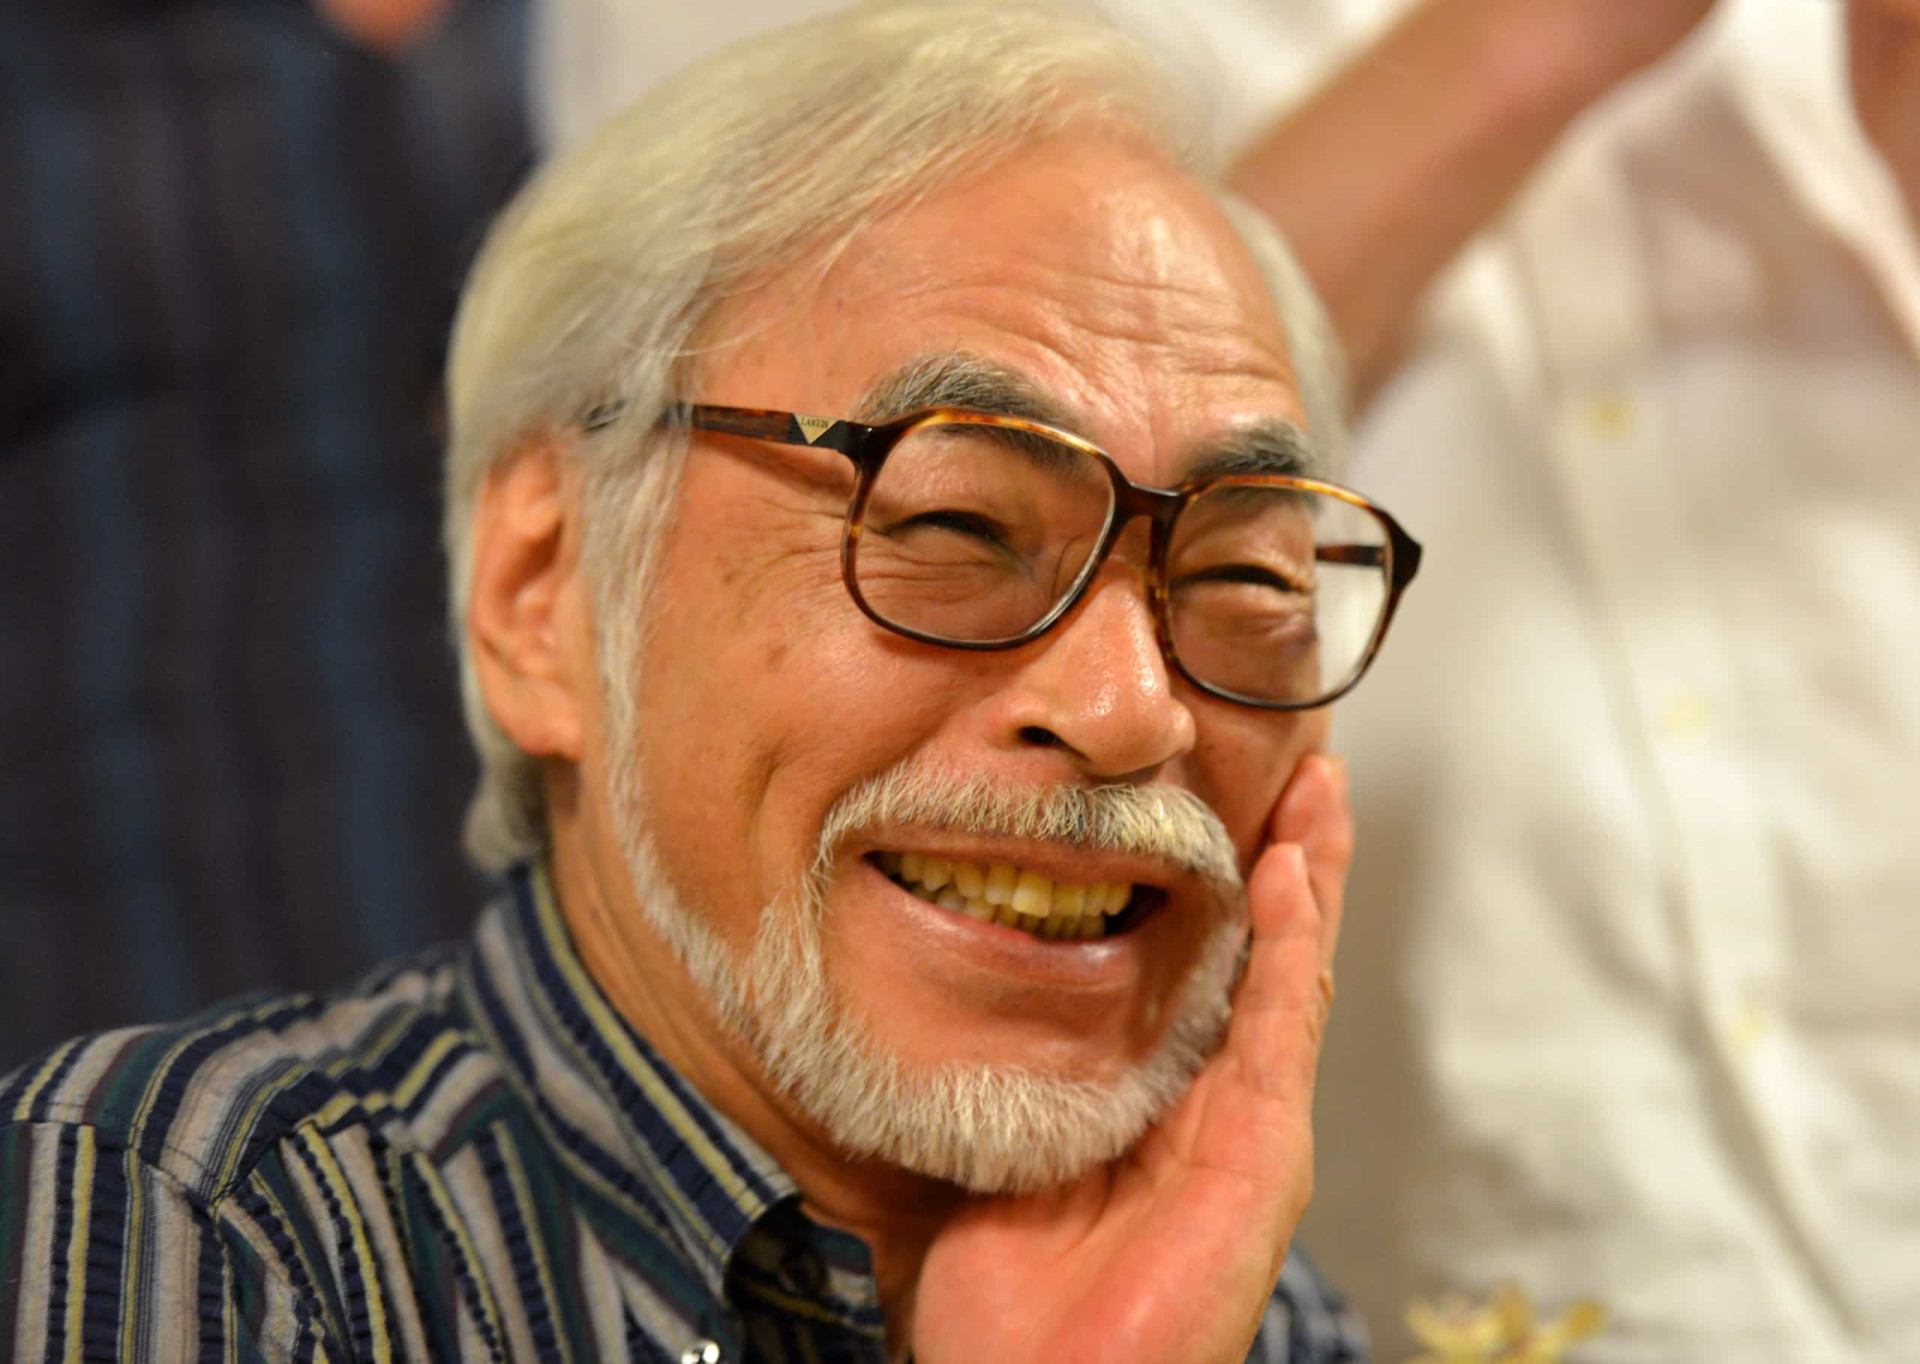 <p>Après avoir pris sa retraite et fermé le Studio Ghibli après la sortie du film "Le vent se lève" en 2013, le réalisateur a fait son grand retour en 2016, pour annoncer la réalisation d'un nouveau film intitulé "Et vous, comment vivez-vous ?", basé sur le roman du même nom. Toshio Suzuki, collaborateur et ami du réalisateur, a confié qu'il s'agissait d'un cadeau pour son petit-fils.</p> <p>Sources: (Screen Rant) (BFI) (IMDb)</p> <p>Découvrez aussi: <a href="https://www.starsinsider.com/fr/cinema/455706/ces-lecons-de-vie-transmises-par-les-dessins-animes">Ces leçons de vie transmises par les dessins-animés</a></p><p><a href="https://www.msn.com/fr-fr/community/channel/vid-7xx8mnucu55yw63we9va2gwr7uihbxwc68fxqp25x6tg4ftibpra?cvid=94631541bc0f4f89bfd59158d696ad7e">Suivez-nous et accédez tous les jours à du contenu exclusif</a></p>